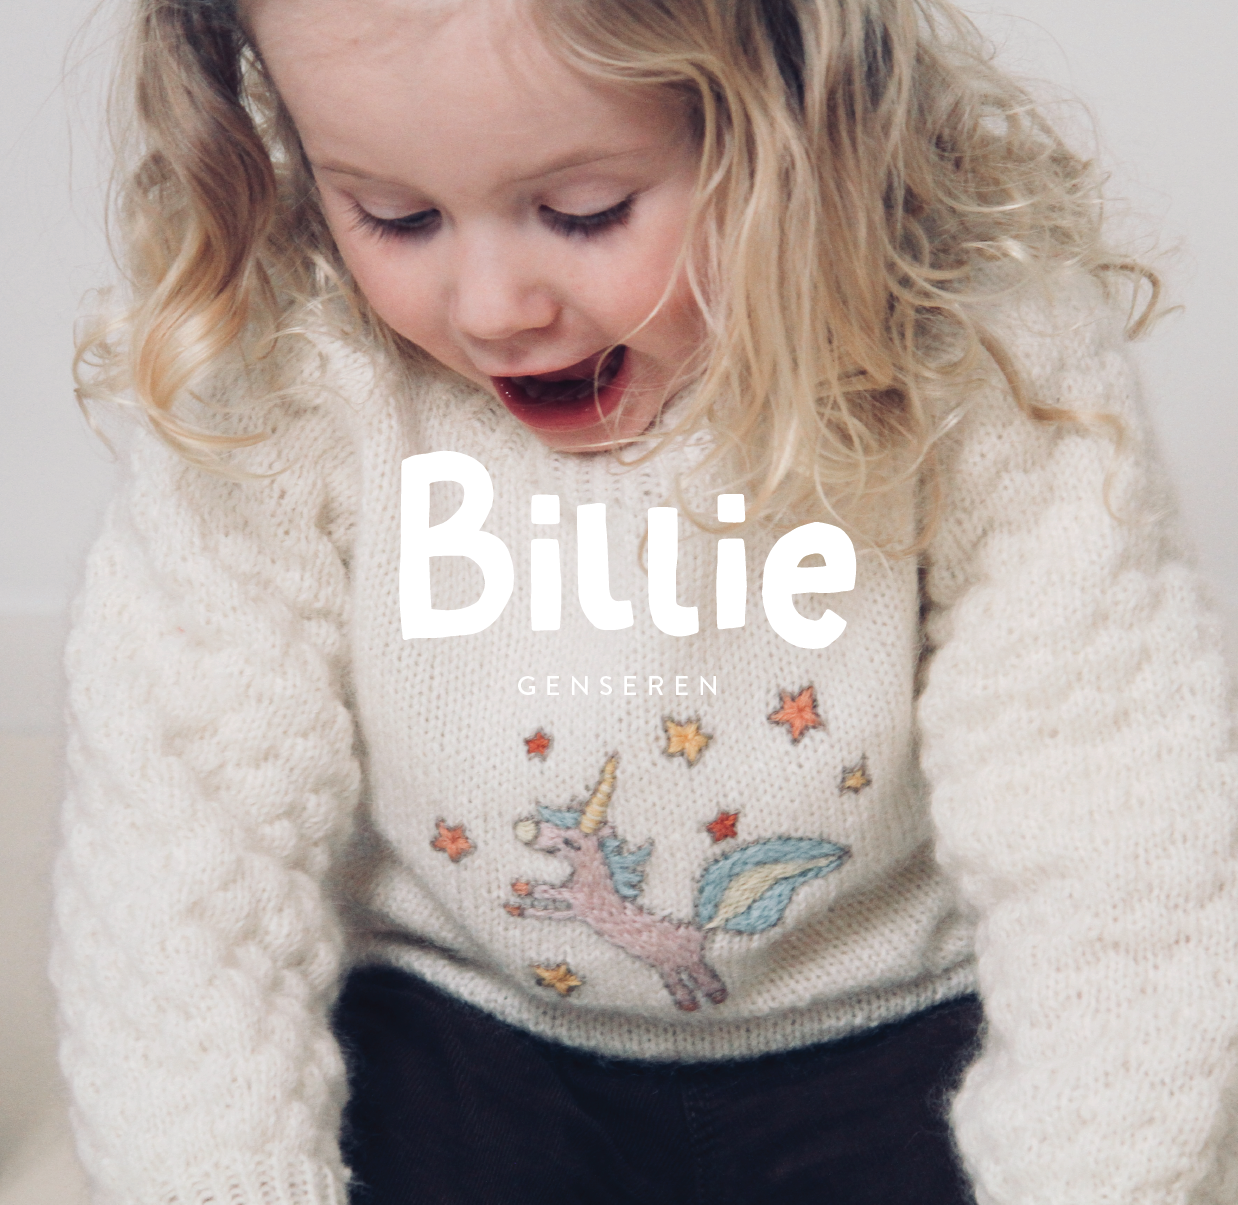 Enhjørningen Billie - The Knitting Stories